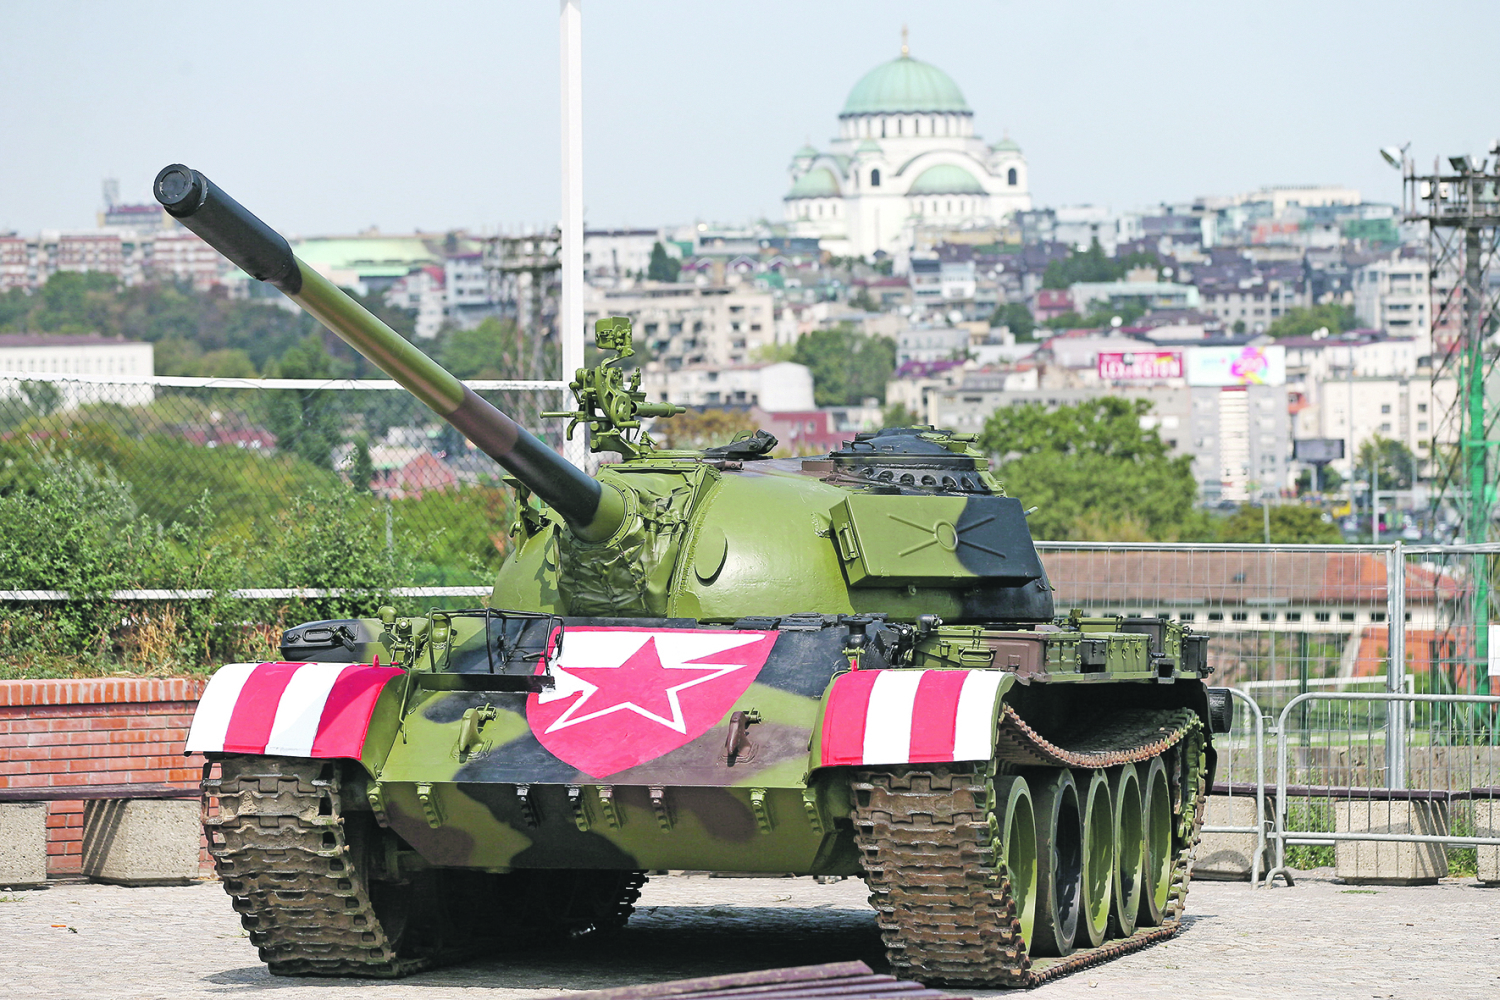 Braćo Srbi, ne bojimo se mi u Bosni vaših tenkova i S-400, ali na koljenima vas molimo, nemojte više Zadruge i Parova!